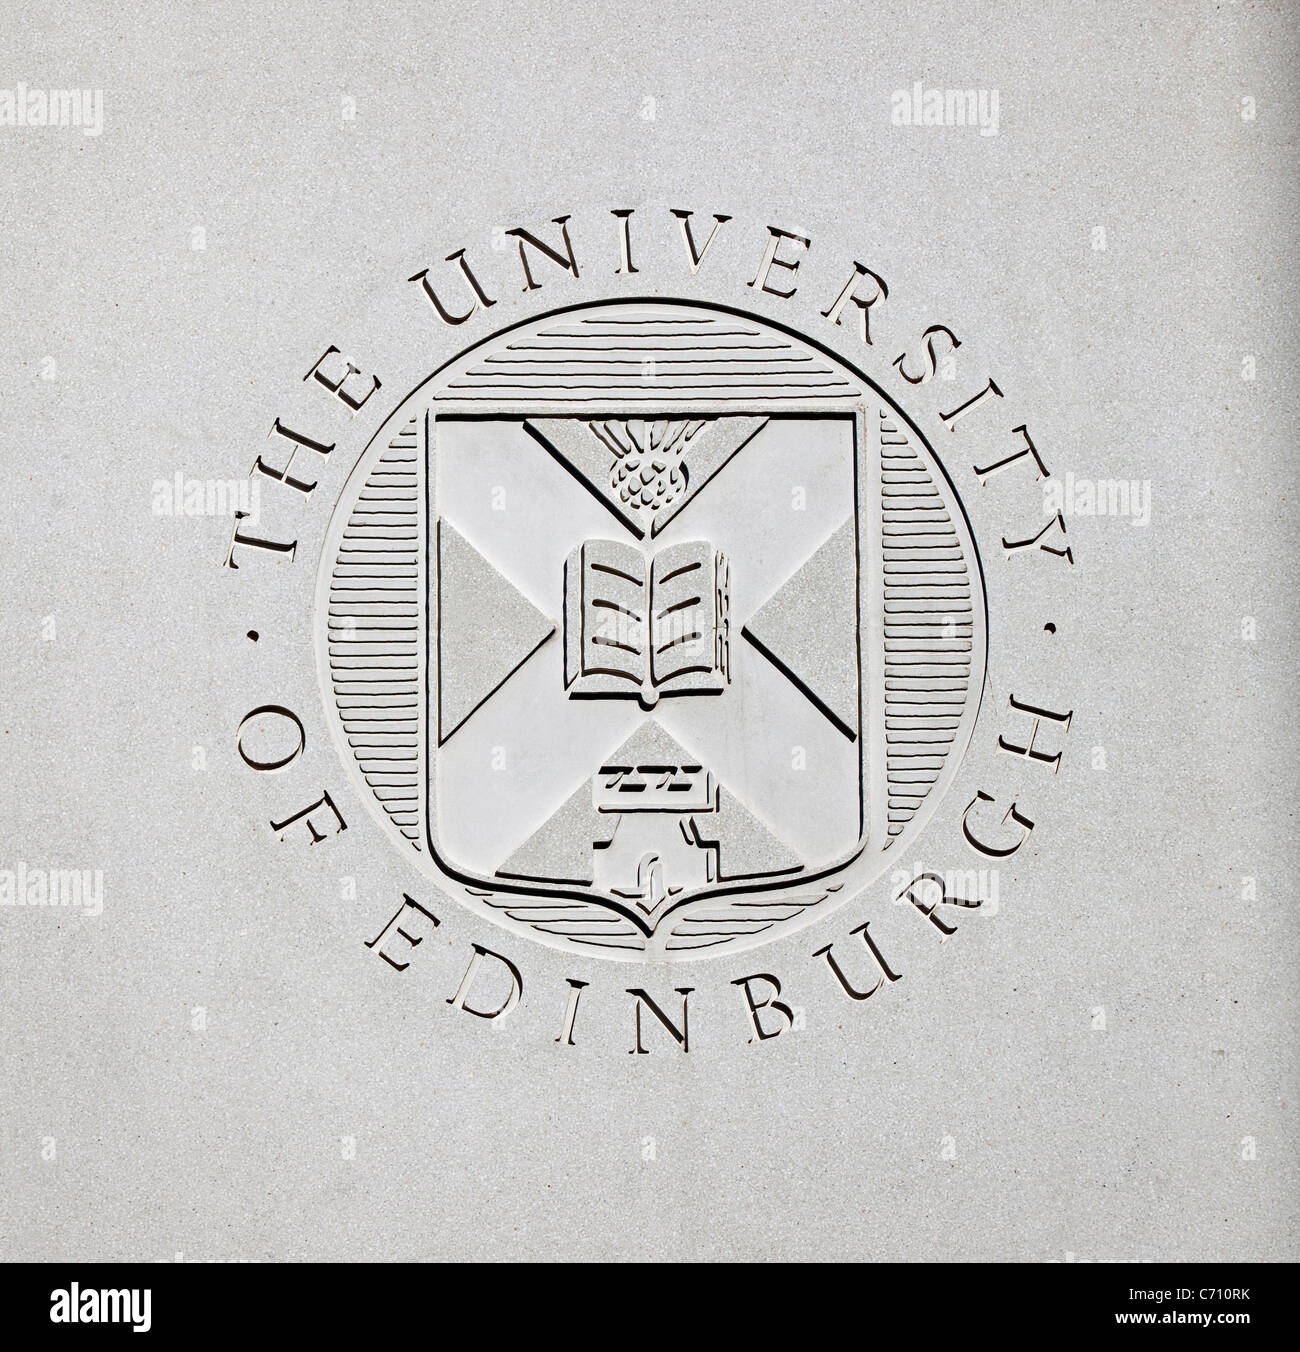 L'Université d'Édimbourg signent l'Ecosse UK Banque D'Images